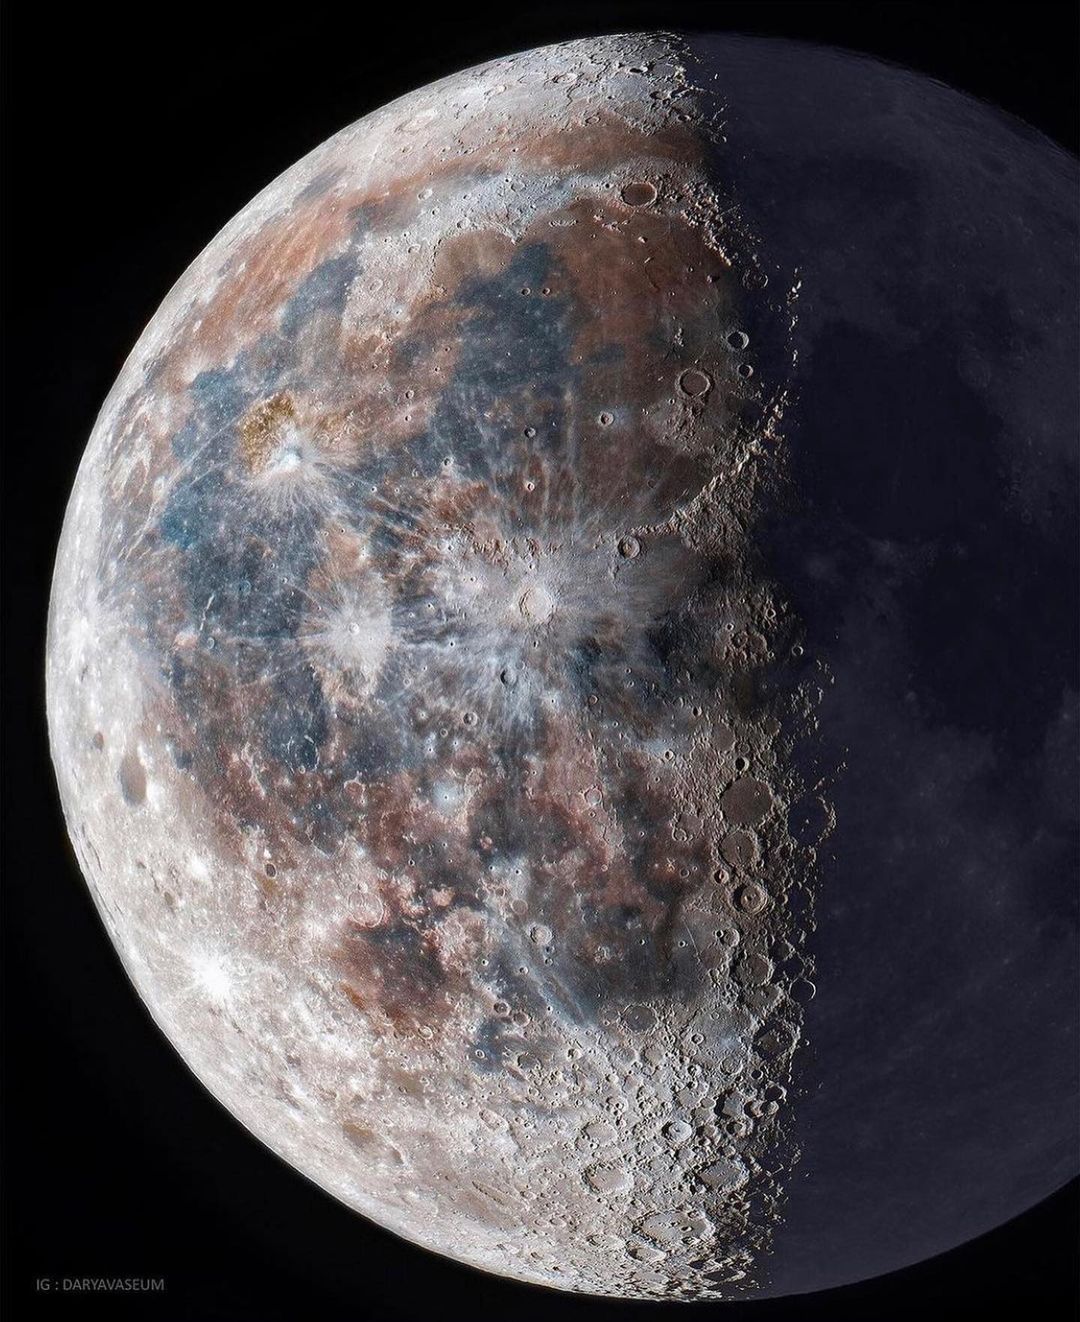 Dps moon. Снимок Луны. Луна в космосе.